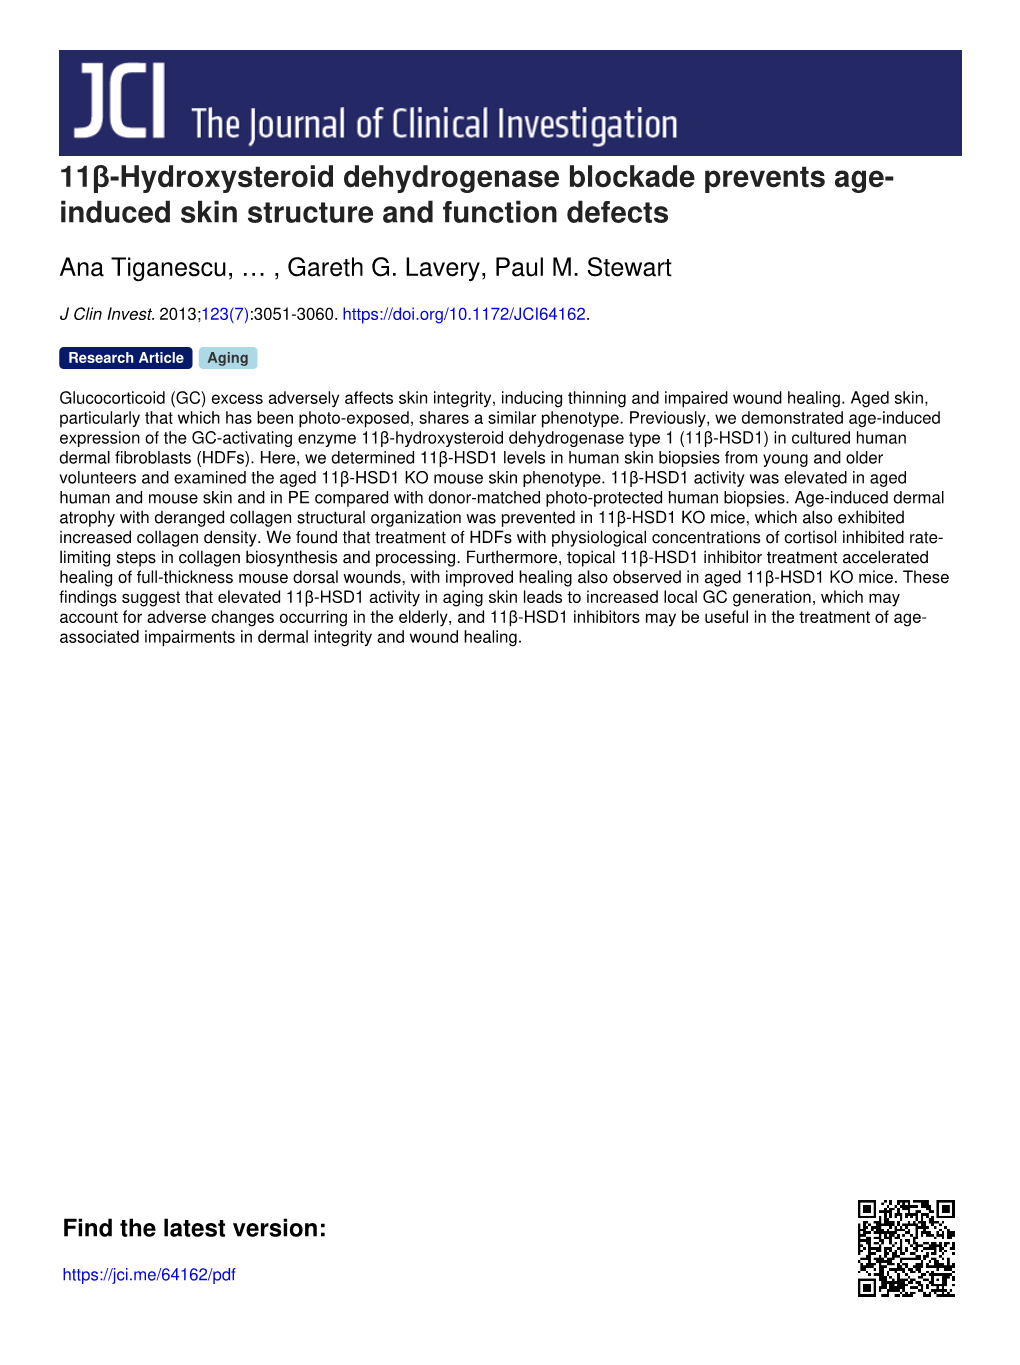 11Β-Hydroxysteroid Dehydrogenase Blockade Prevents Age- Induced Skin Structure and Function Defects